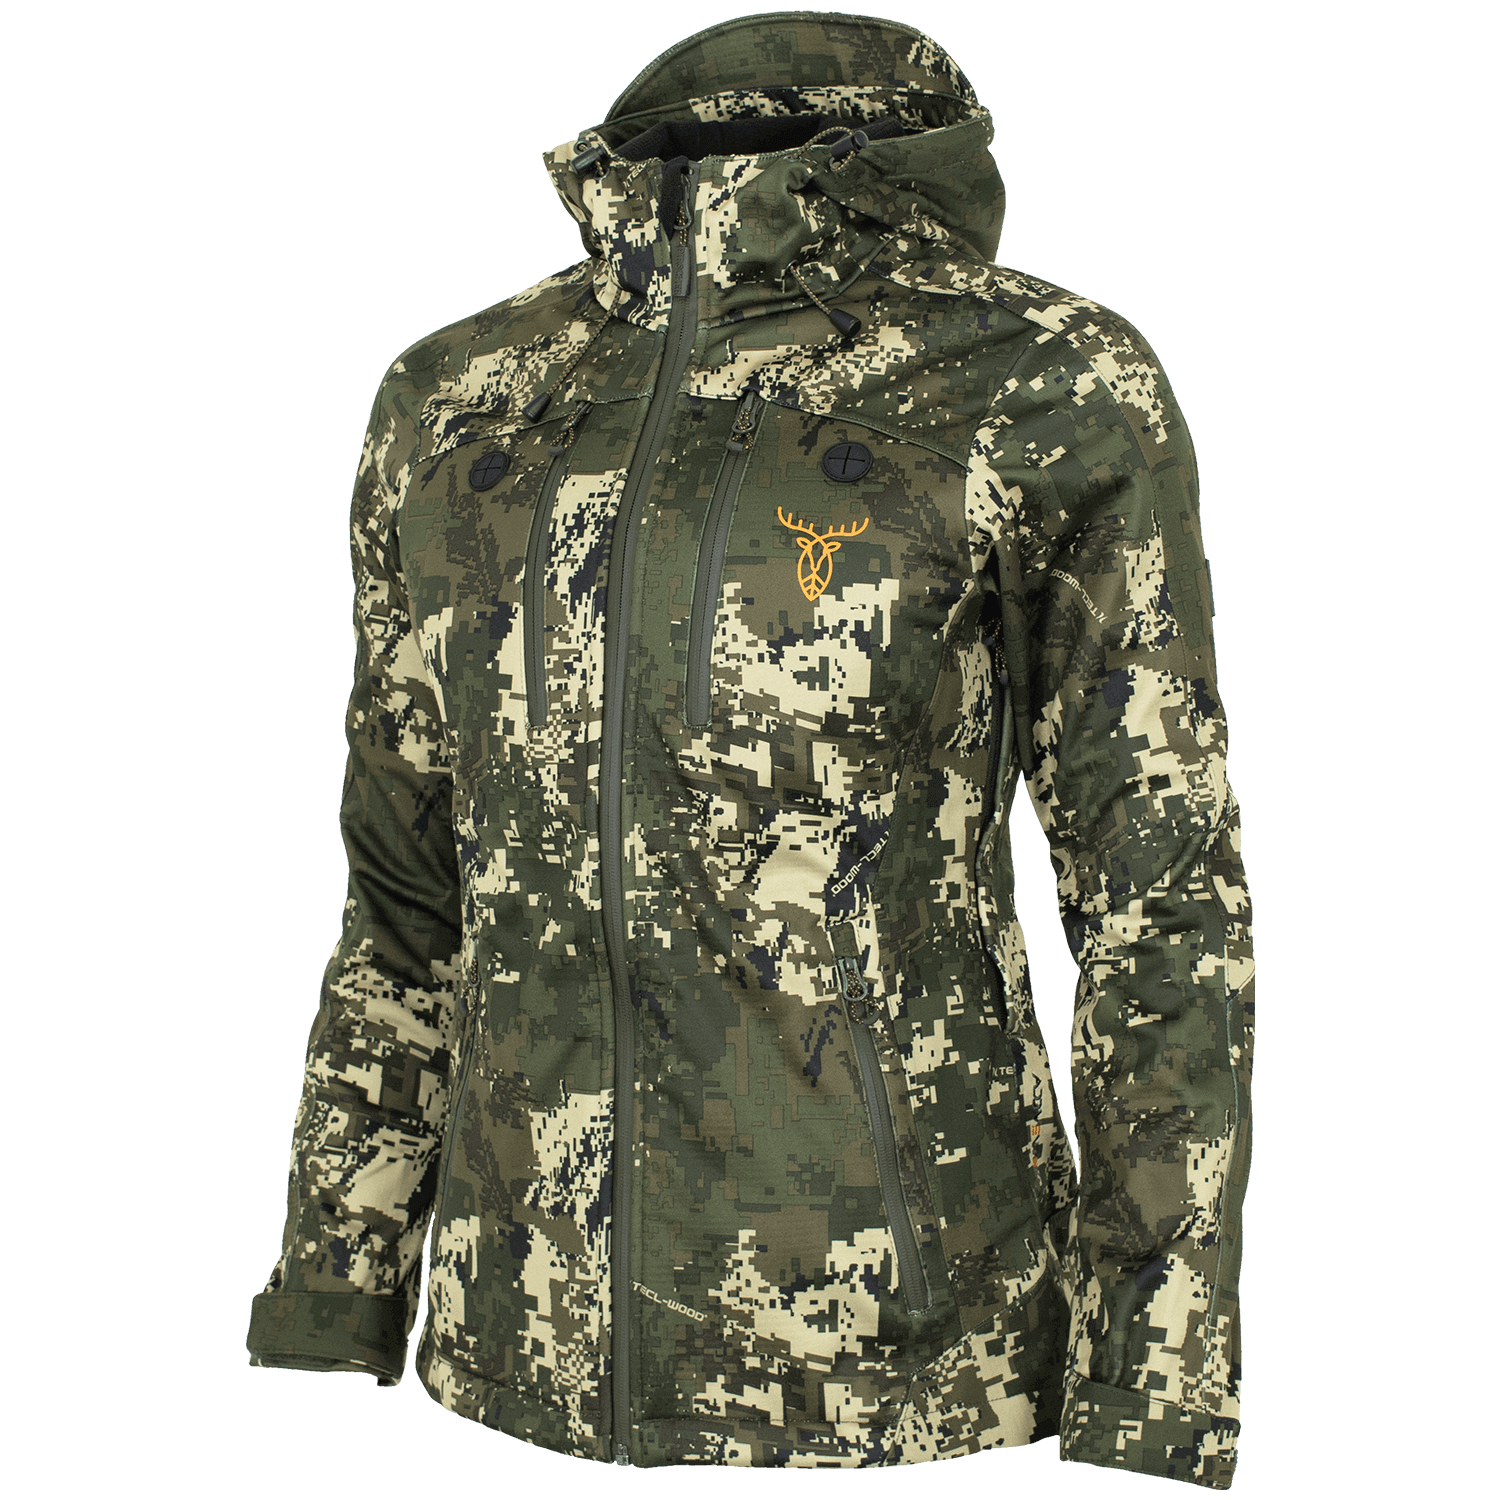 Pirscher Gear Allseason Ladies Jacket (Optimax) - Camouflage Jackets